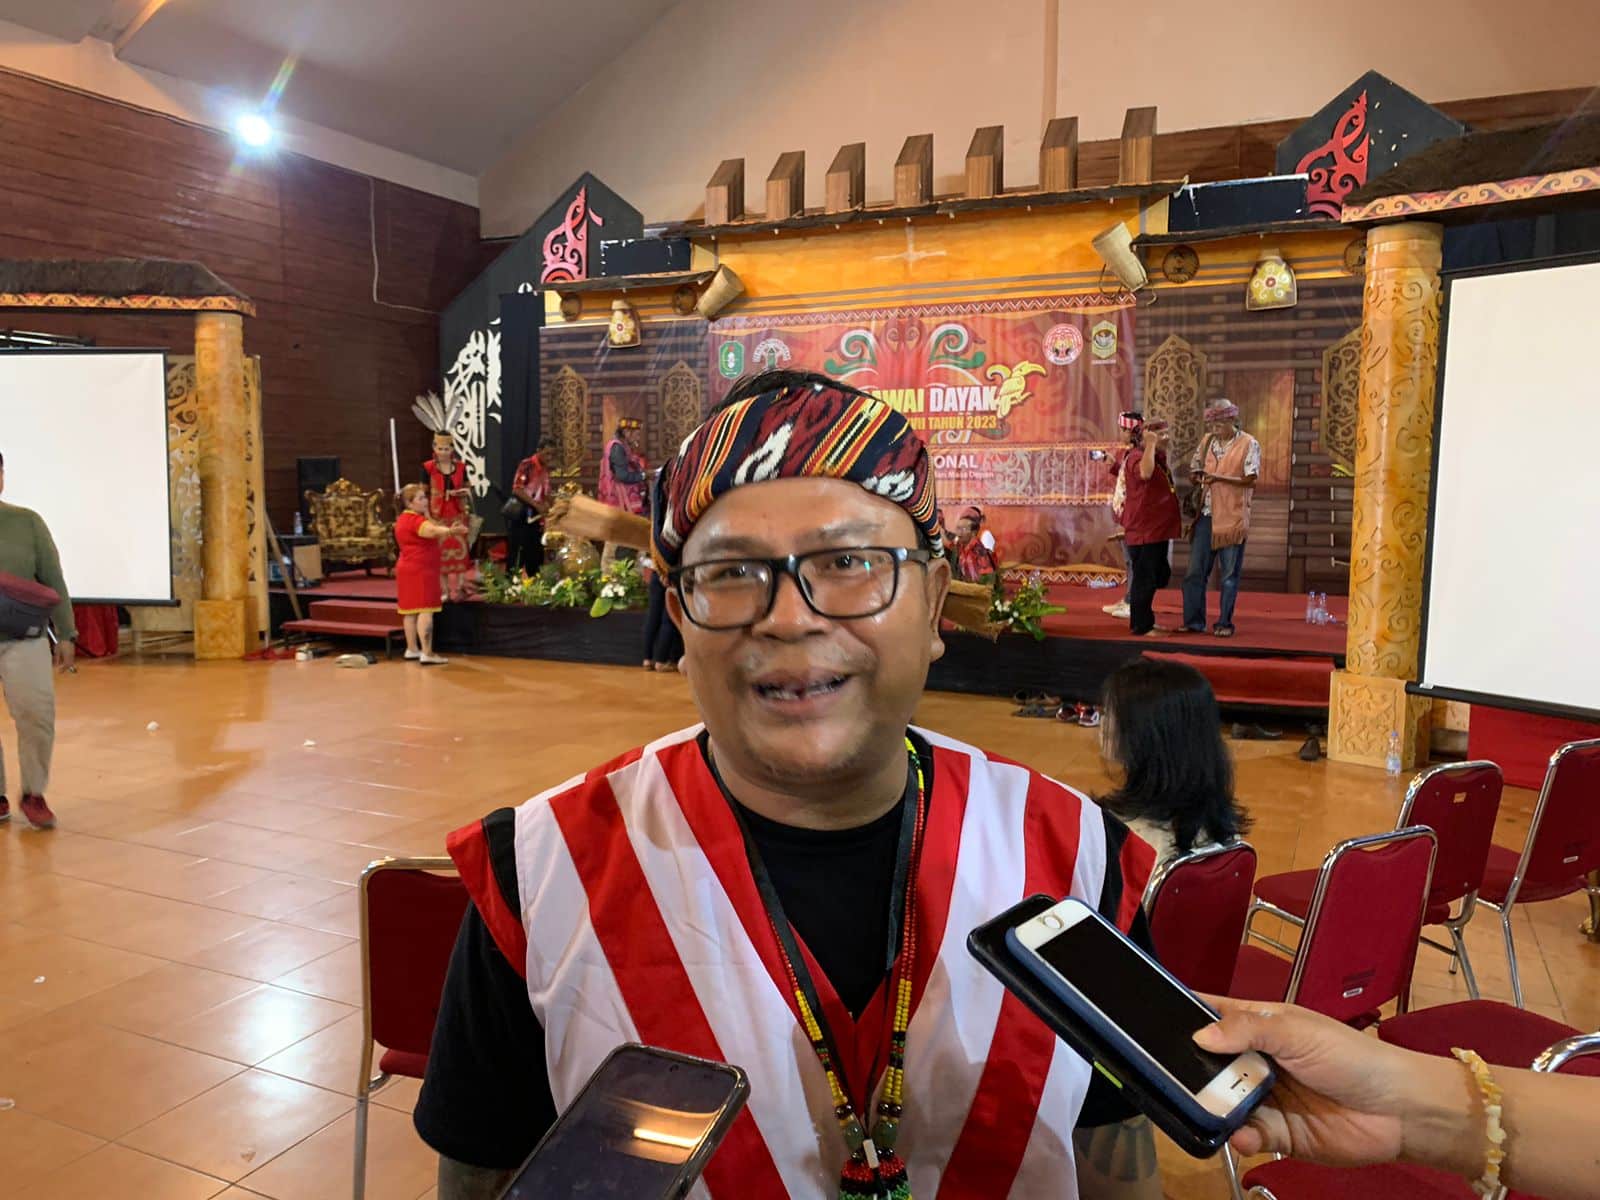 Ketua Panitia Pekan Gawai Dayak (PGD) ke-37, Yohanes S Laon. (Foto: Indri)